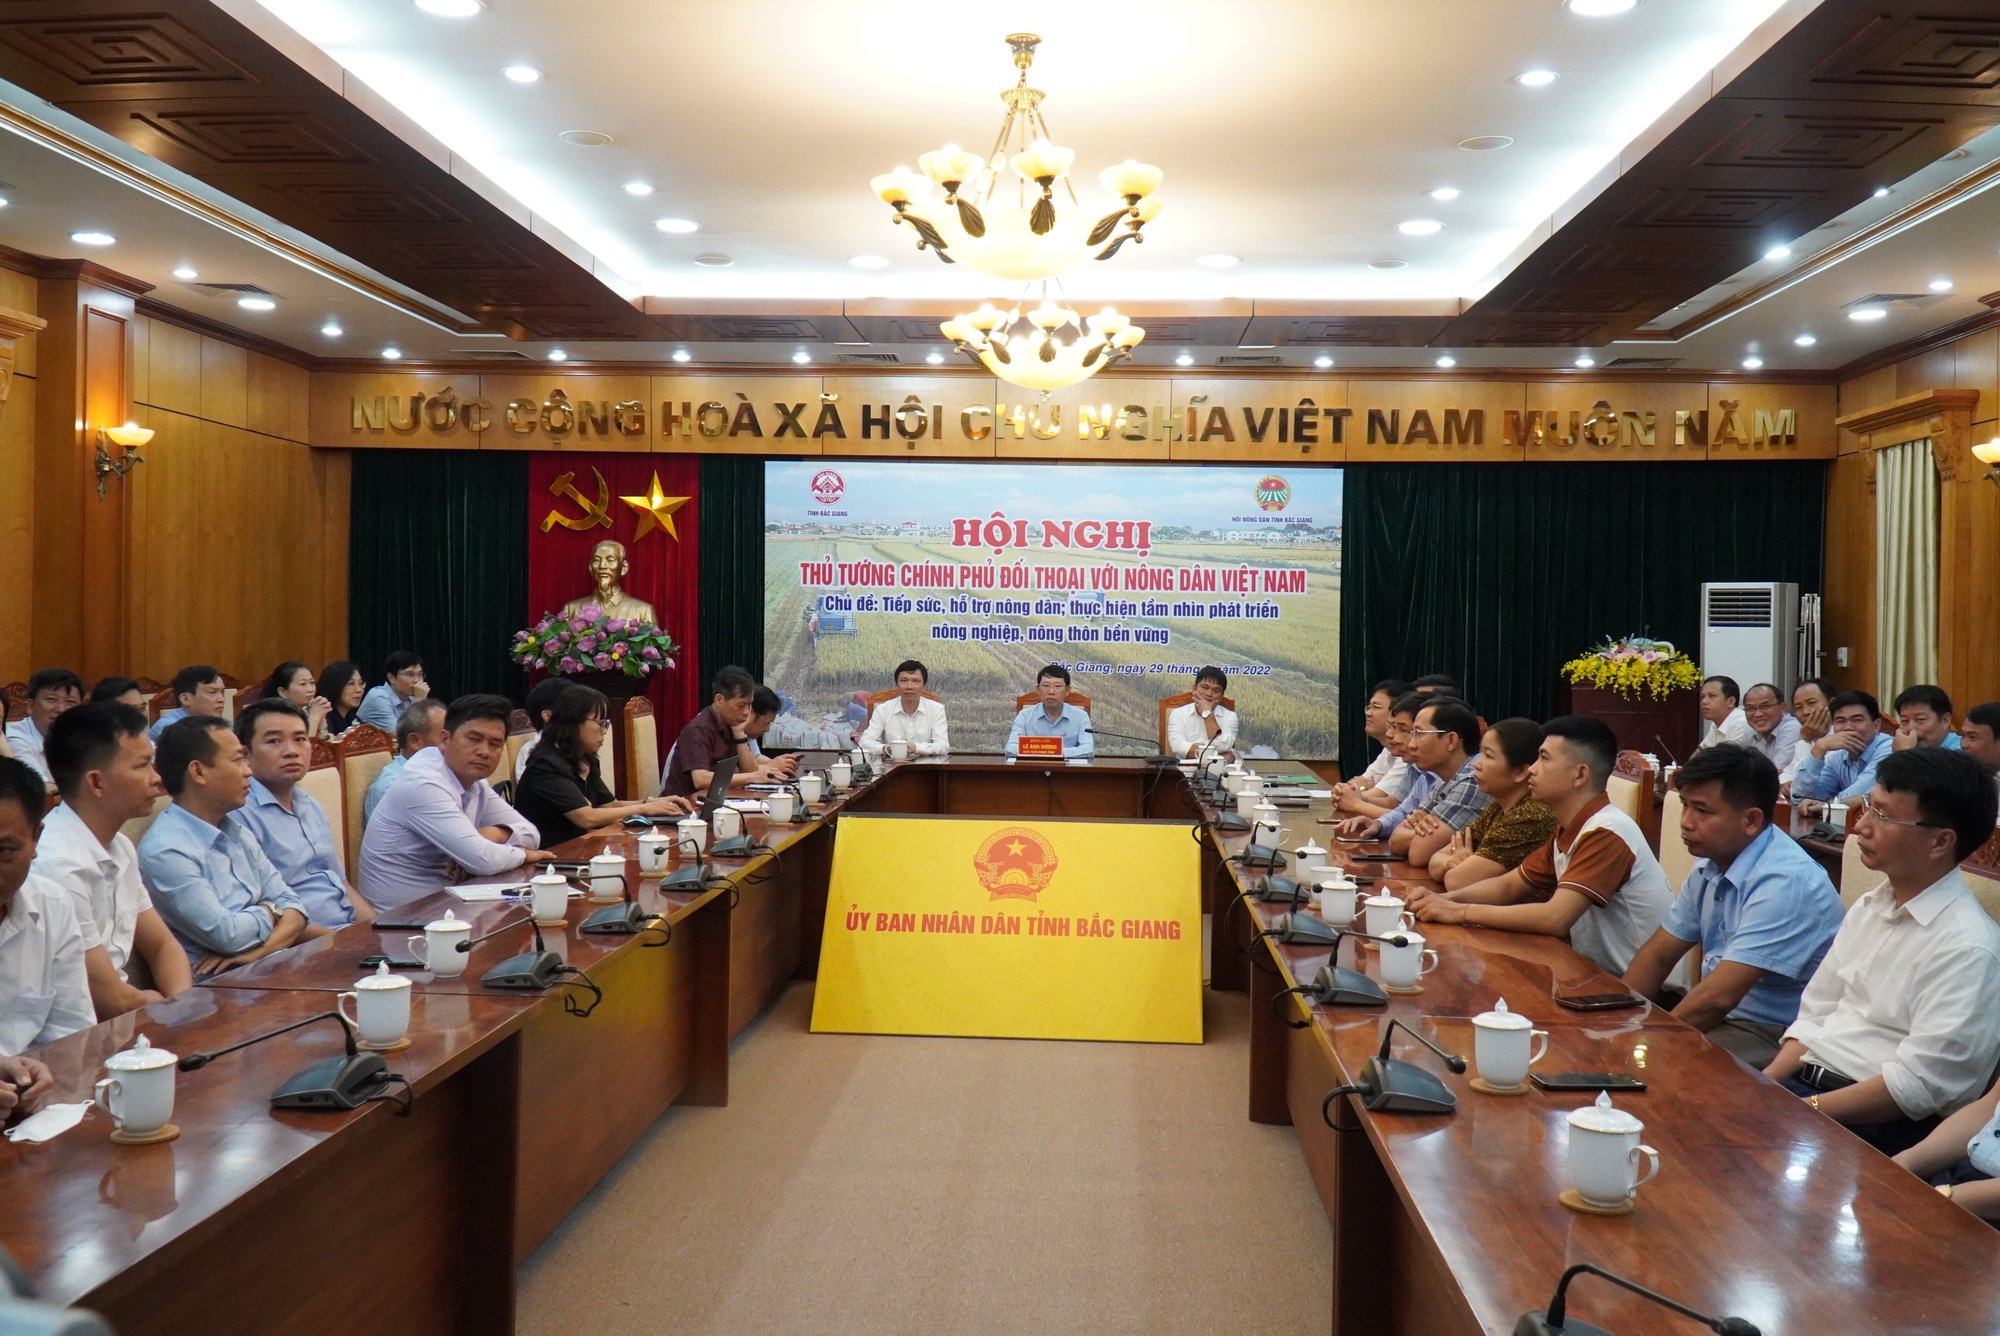 Đang kết nối trực tuyến 62 điểm cầu với Hội nghị Thủ tướng Chính phủ đối thoại với nông dân lần thứ 4 - Ảnh 4.